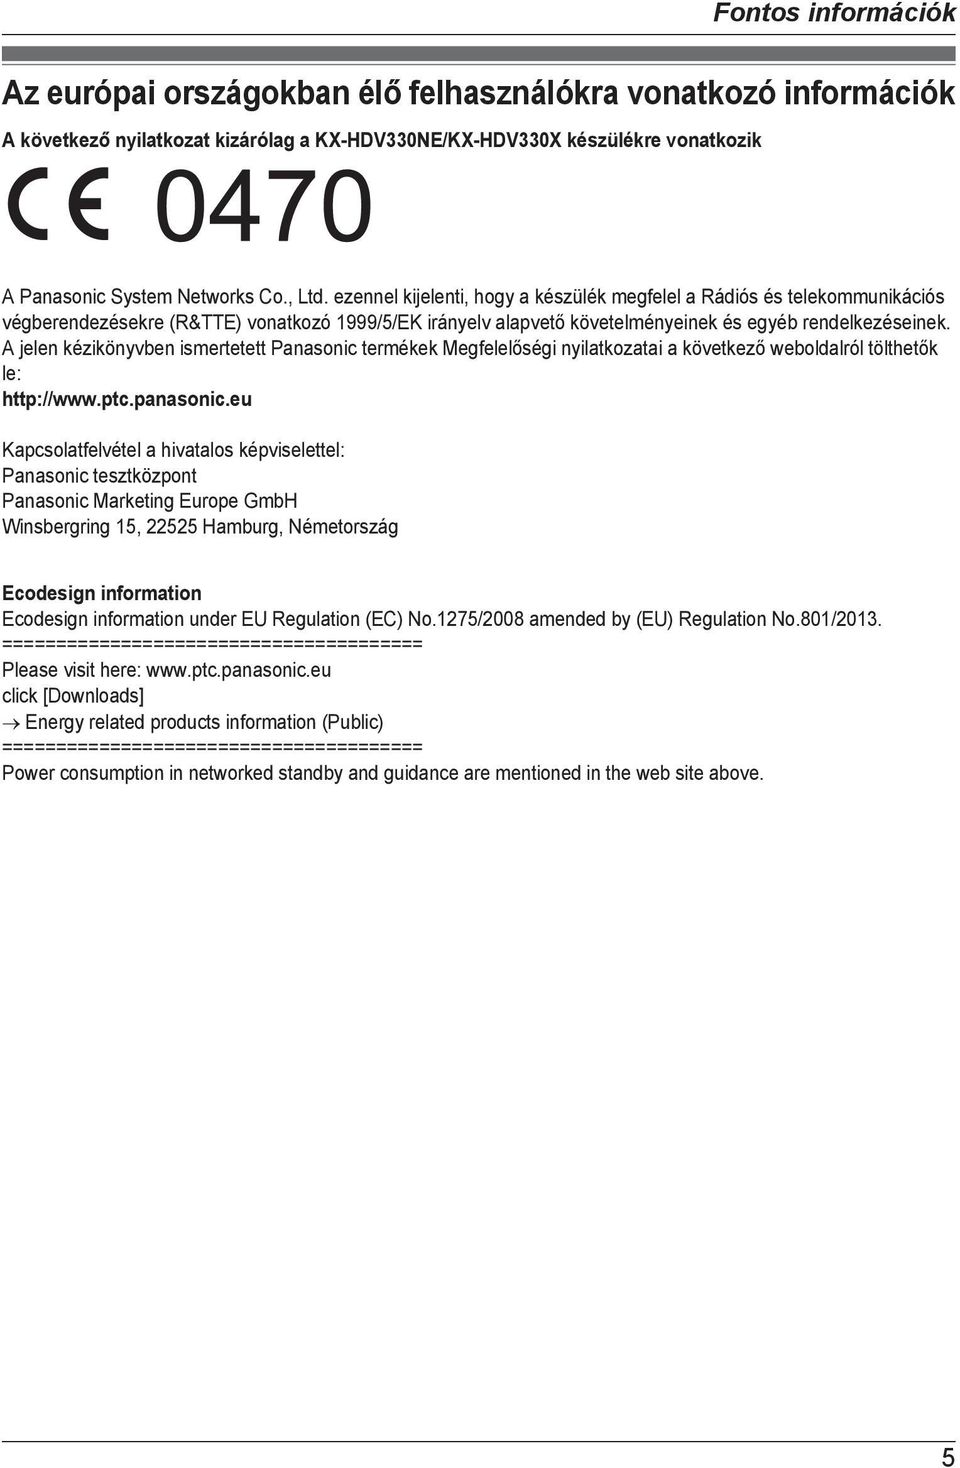 A jelen kézikönyvben ismertetett Panasonic termékek Megfelelőségi nyilatkozatai a következő weboldalról tölthetők le: http://www.ptc.panasonic.